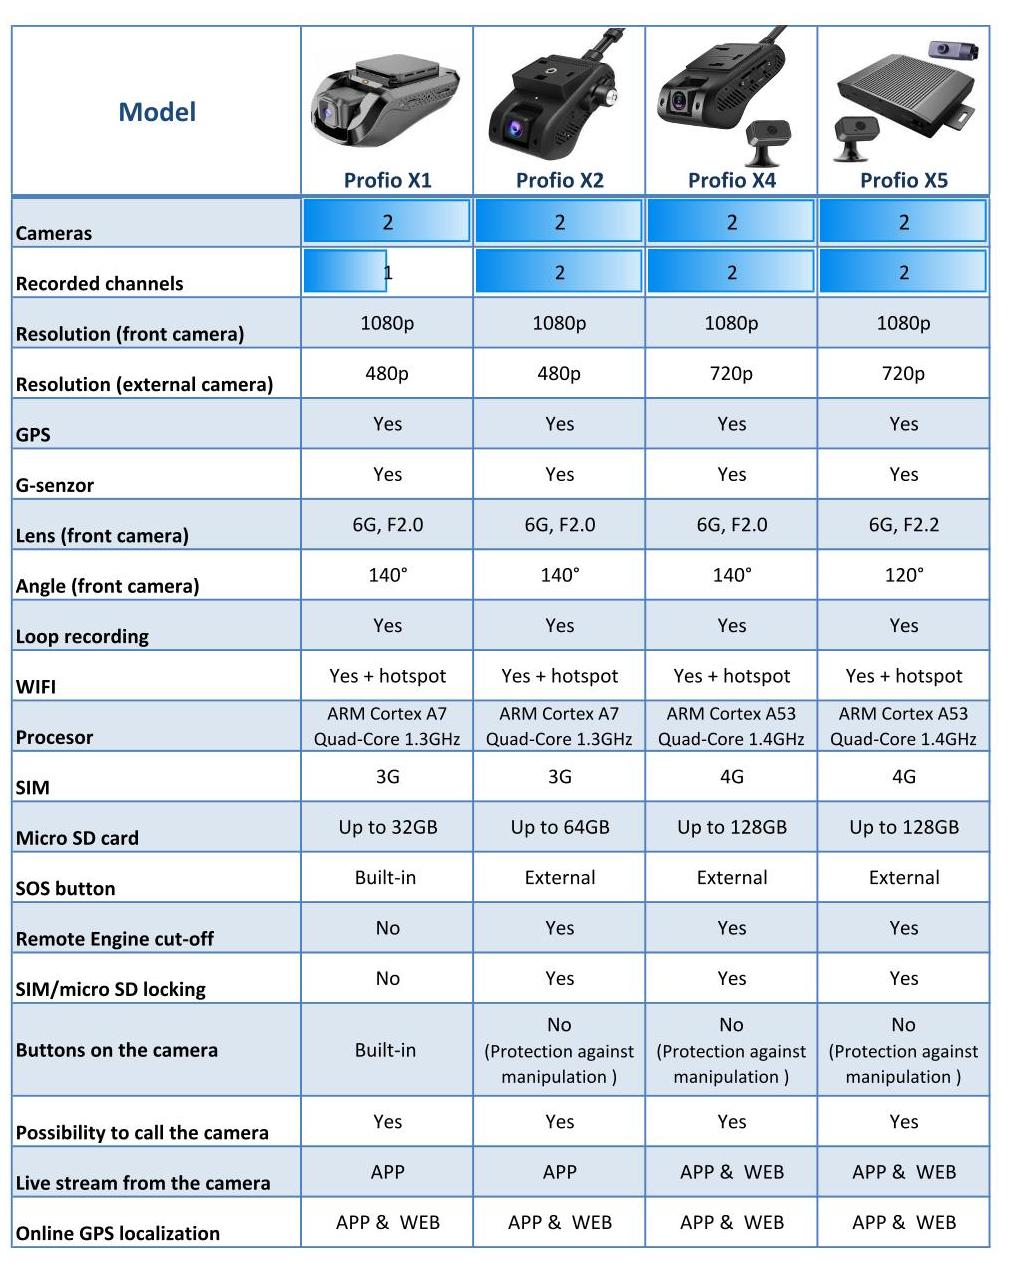 comparaison des systèmes de caméras profio